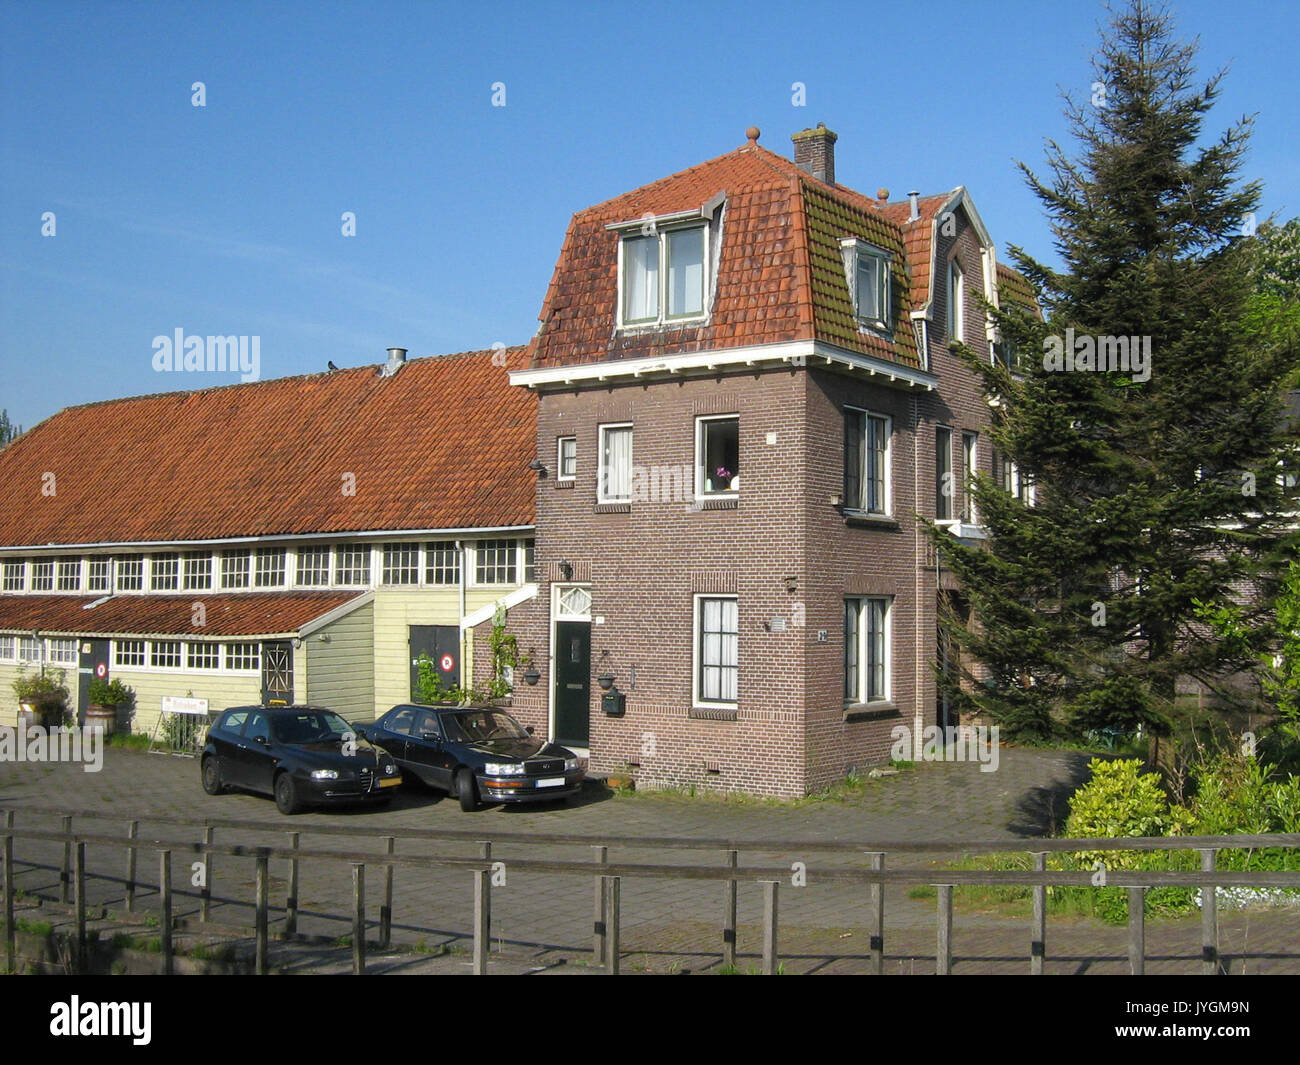 29 Rondehoep Oost Ouderkerk aan de Amstel Netherlands Stock Photo